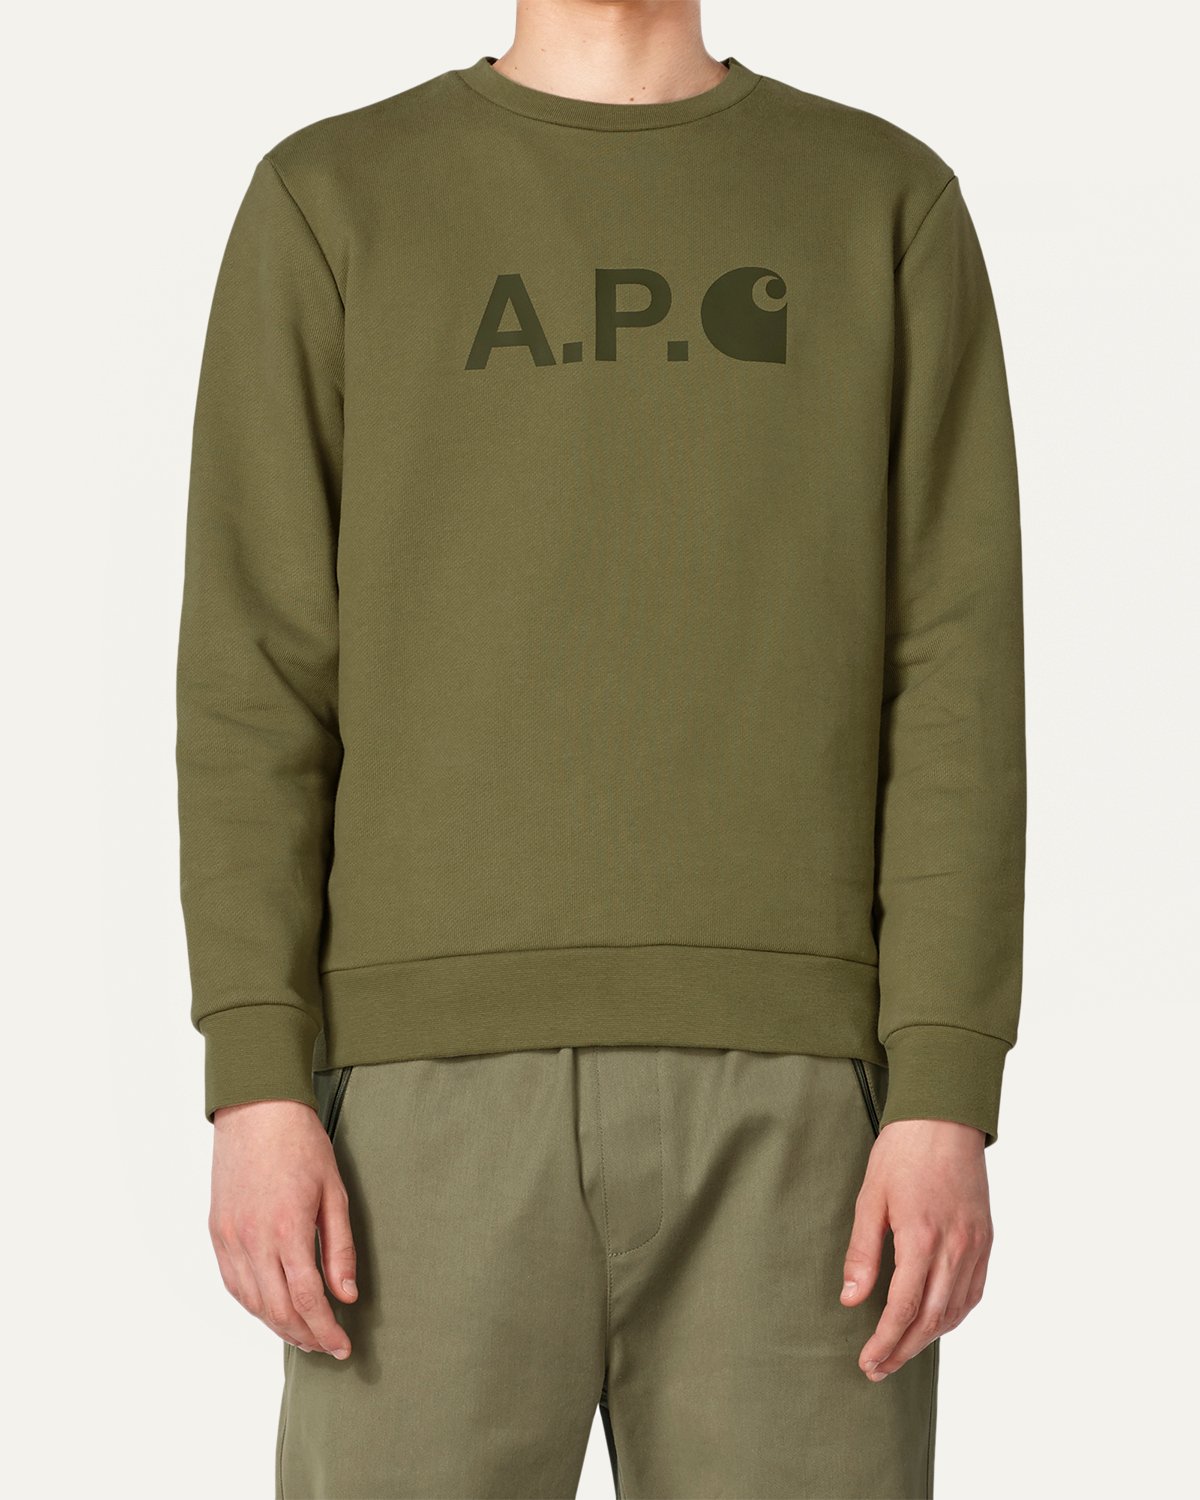 A.P.C. x Carhartt WIP - Ice Sweatshirt - Sweatshirts - Green - Image 2